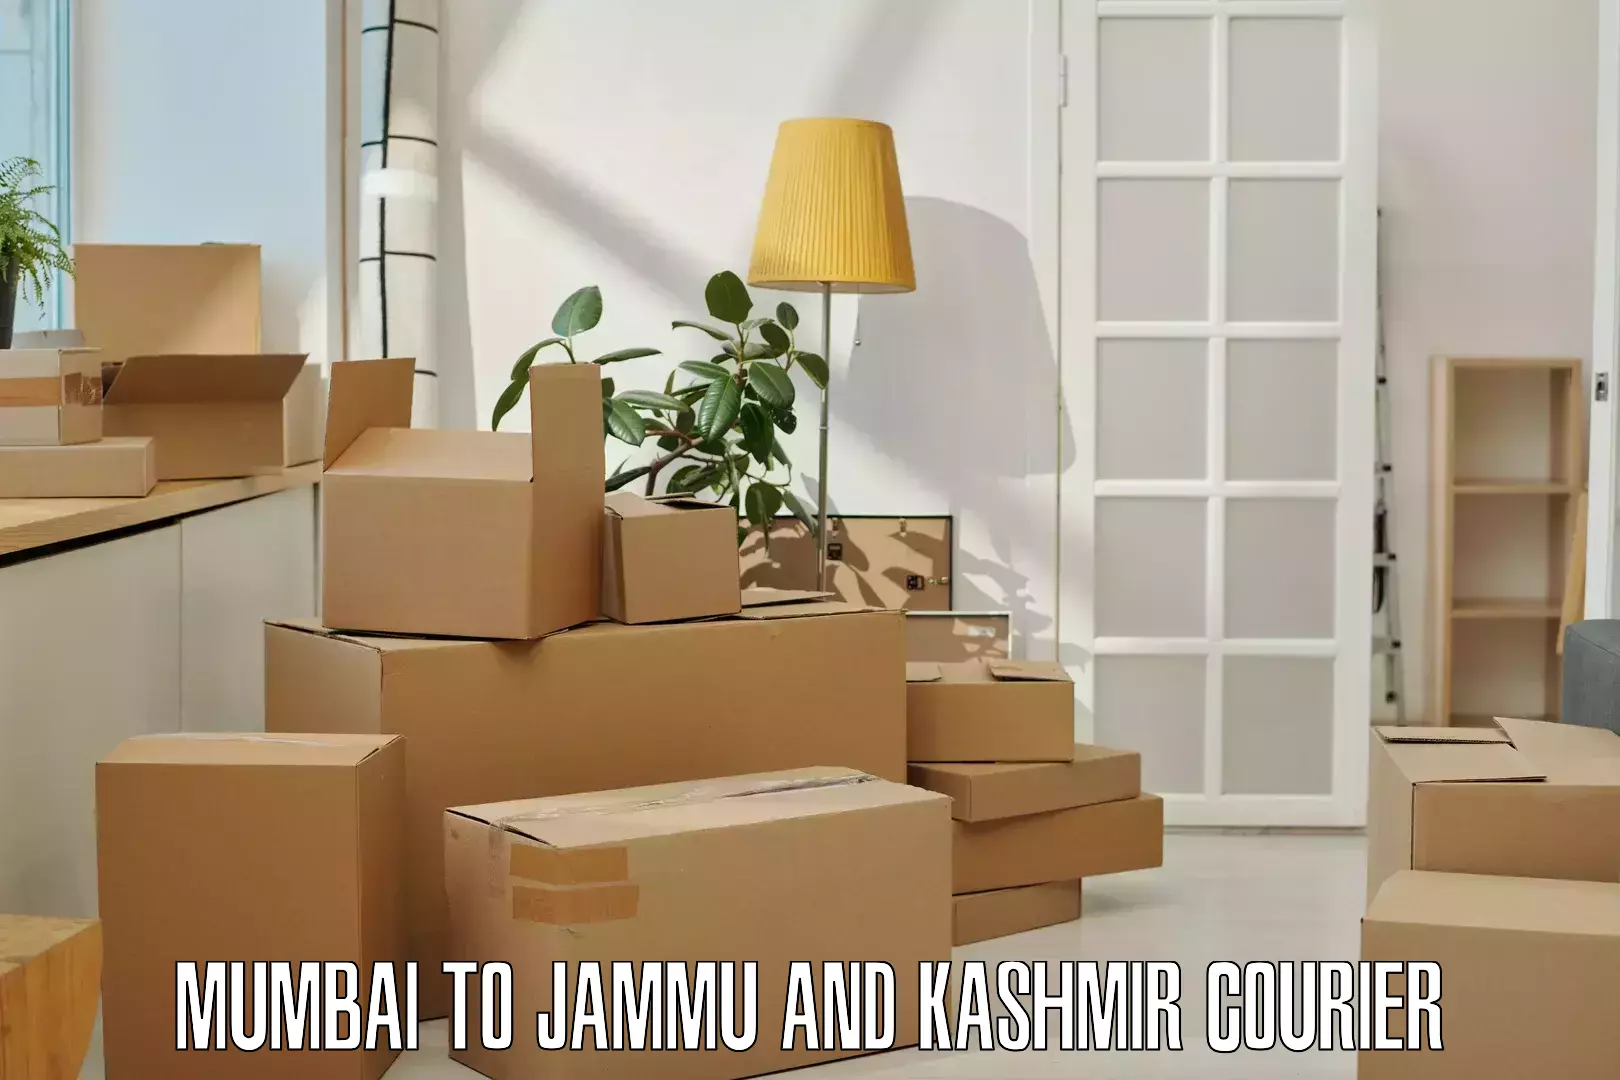 Courier service partnerships Mumbai to Jammu and Kashmir